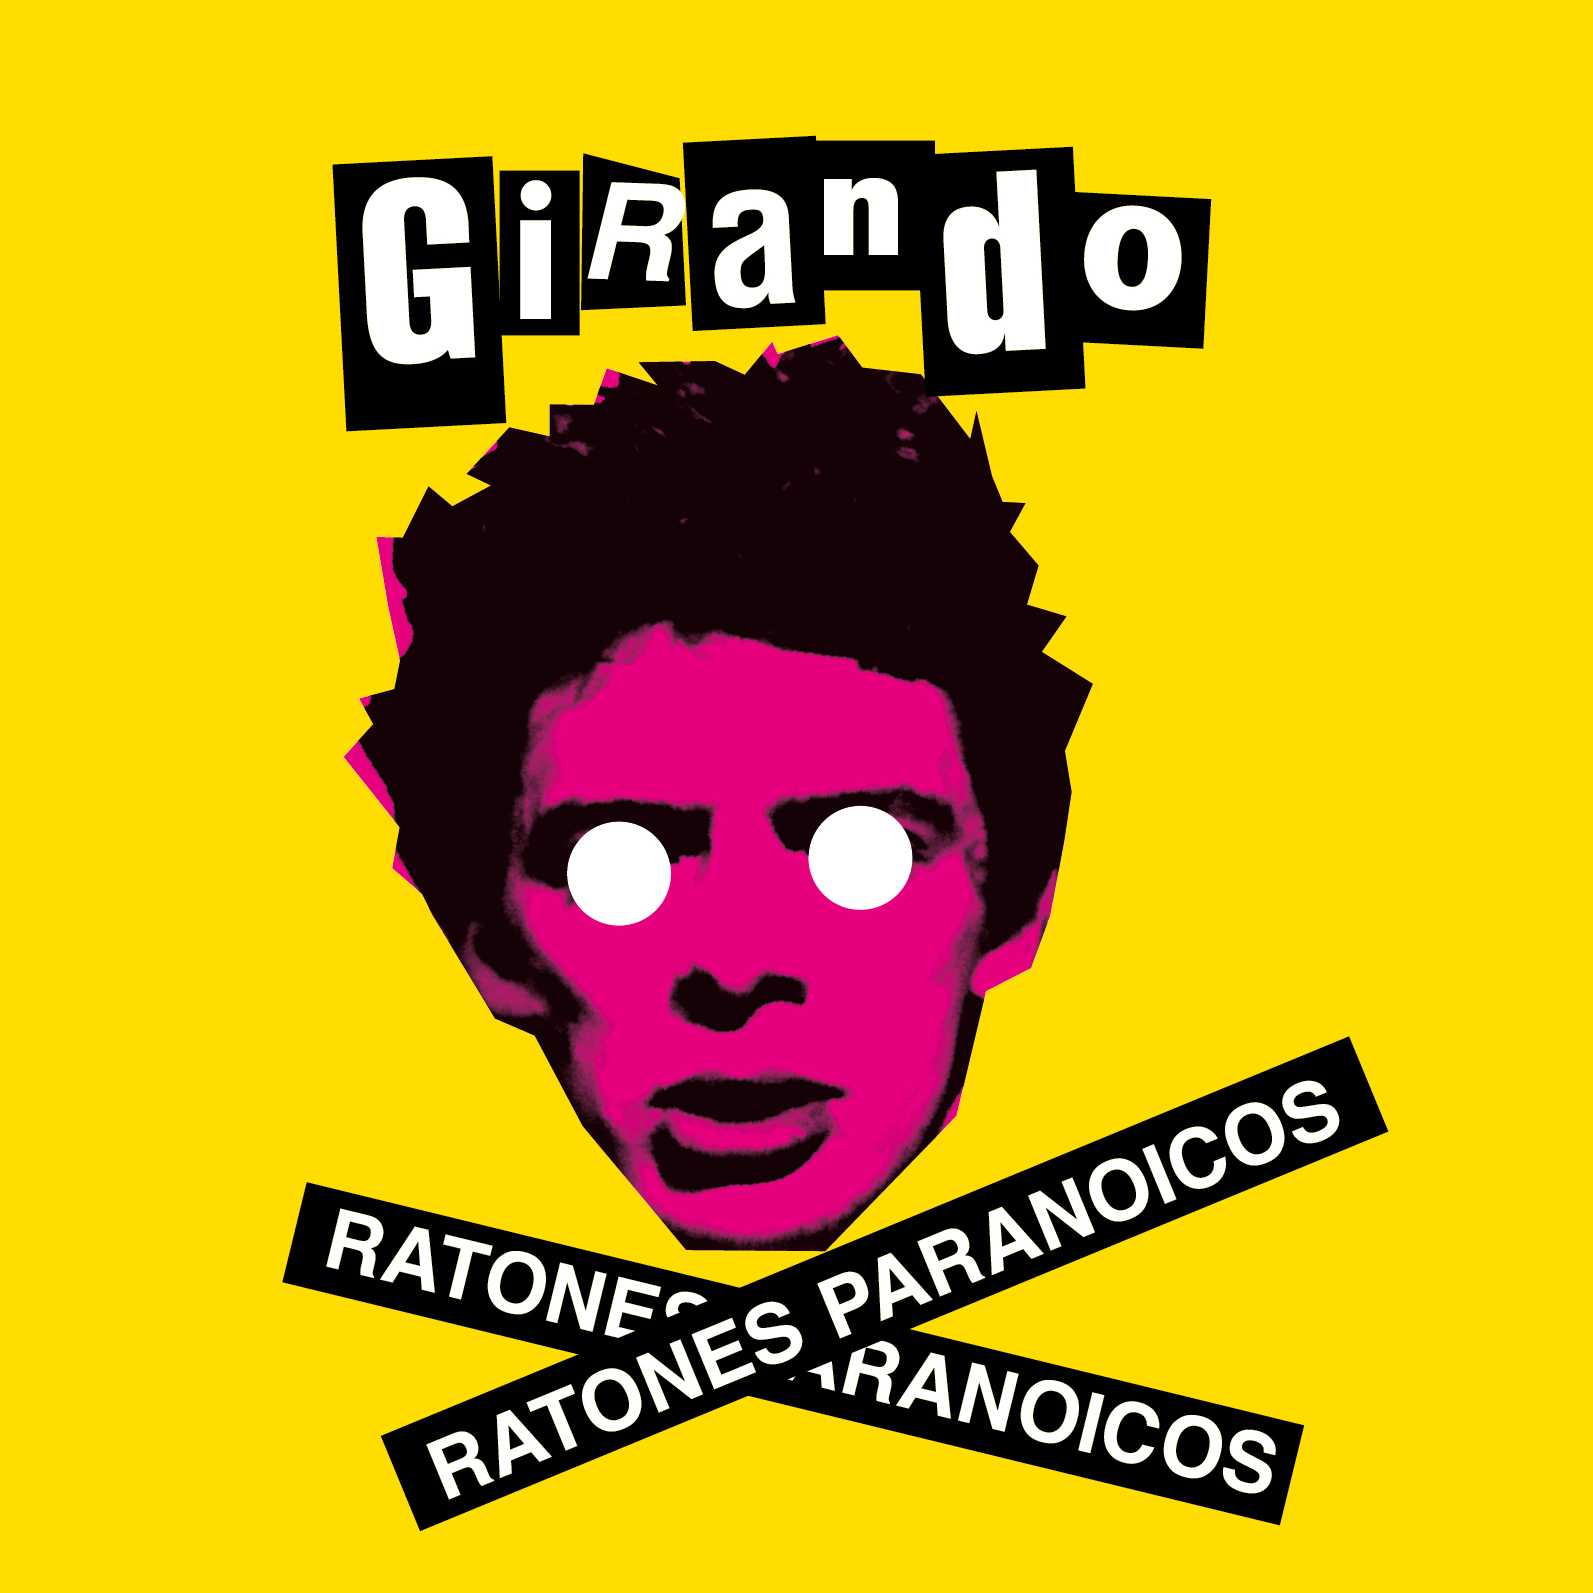 Girando / Ratones Paranoicos (Mixer Edition)